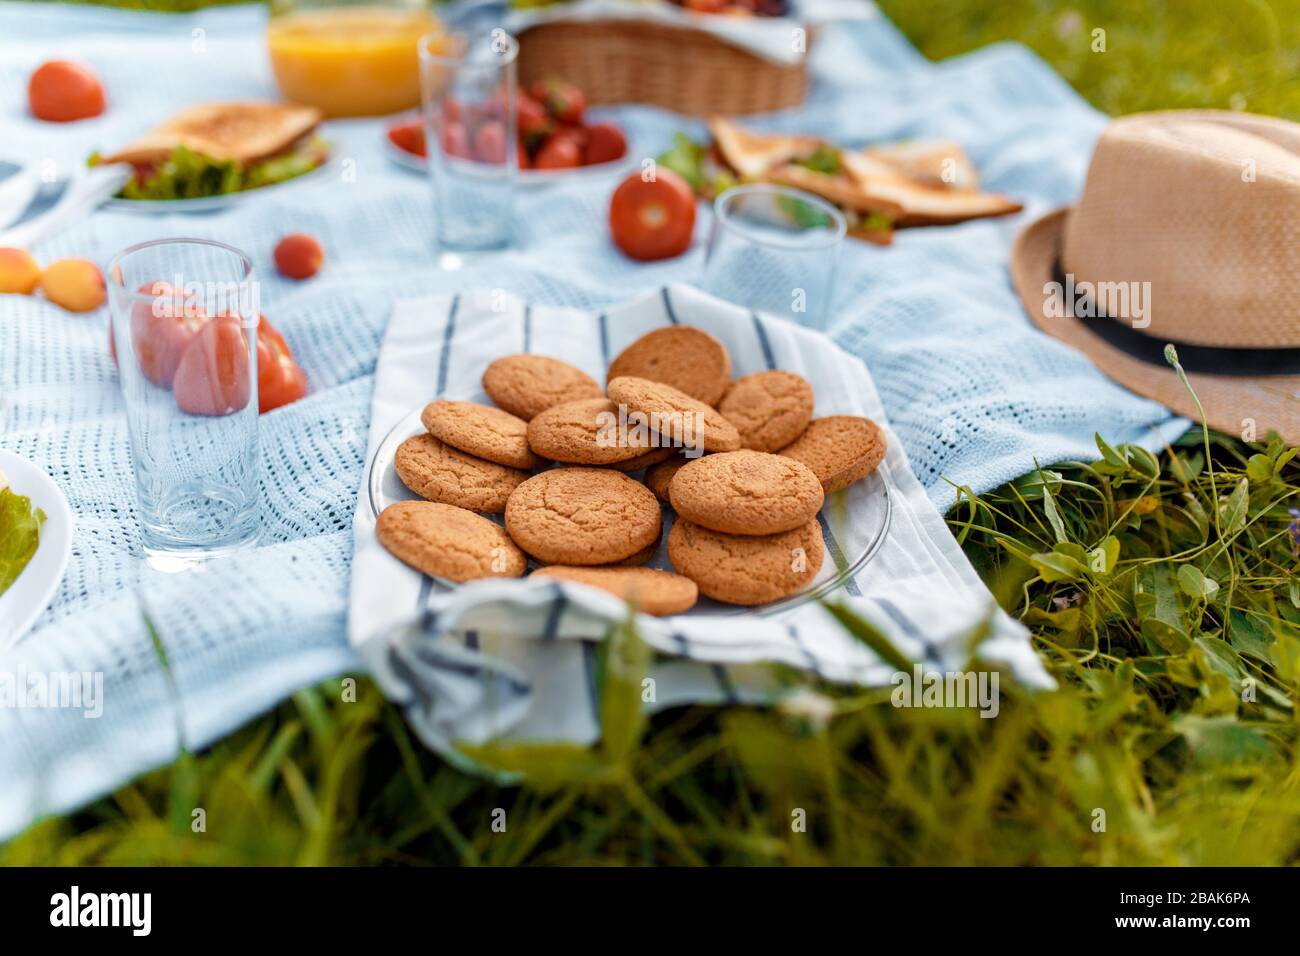 Sommerpicknick auf dem Gras mit einem offenen Picknickkorb, Obst, mit getoasteten Sandwiches und Beeren. Picknicktablecke Stockfoto